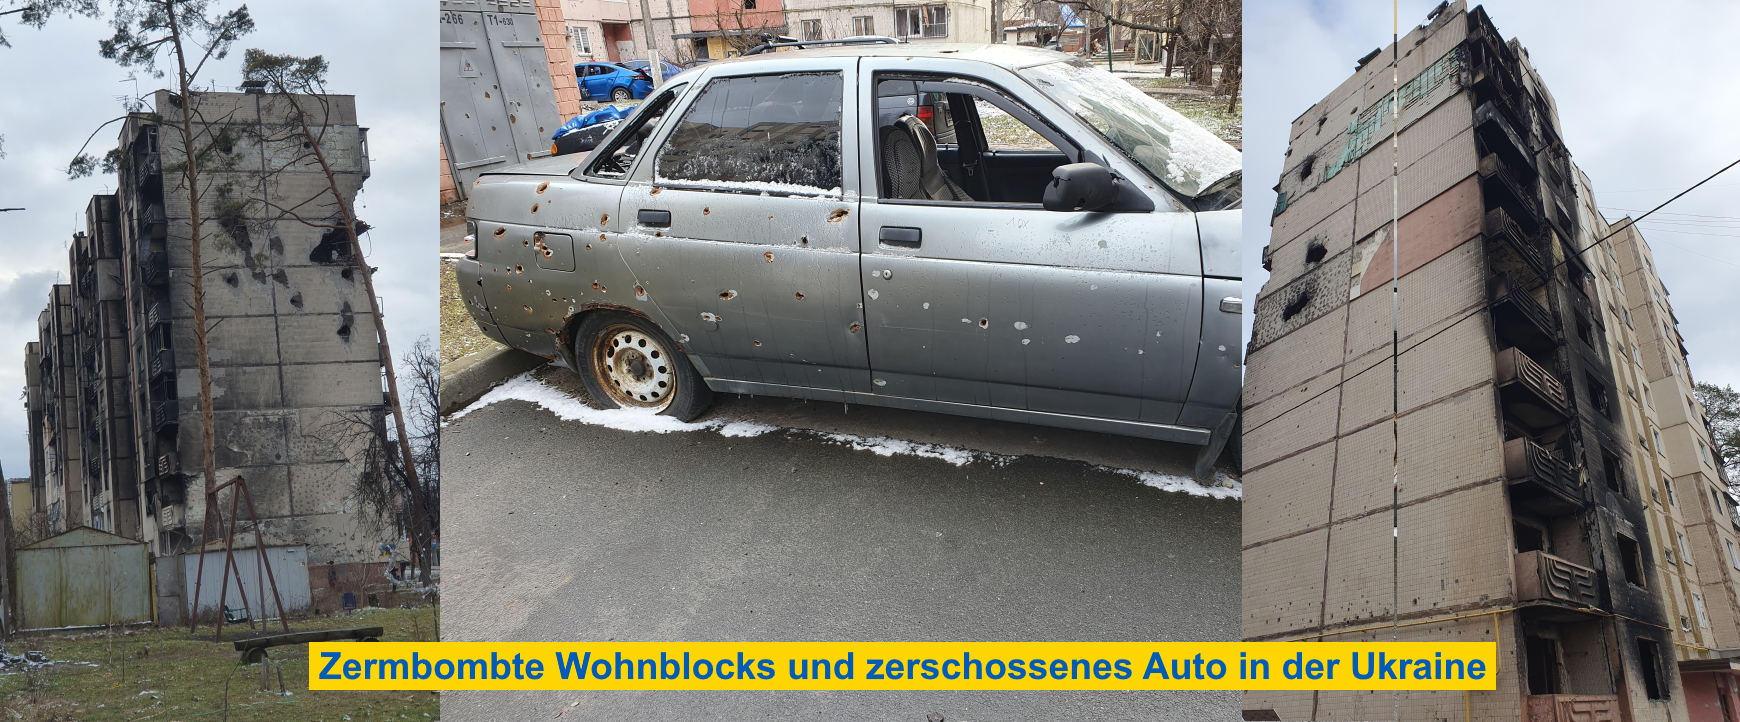 Zerbombte Wohnblocks und zerschossenes Auto in der Ukraine